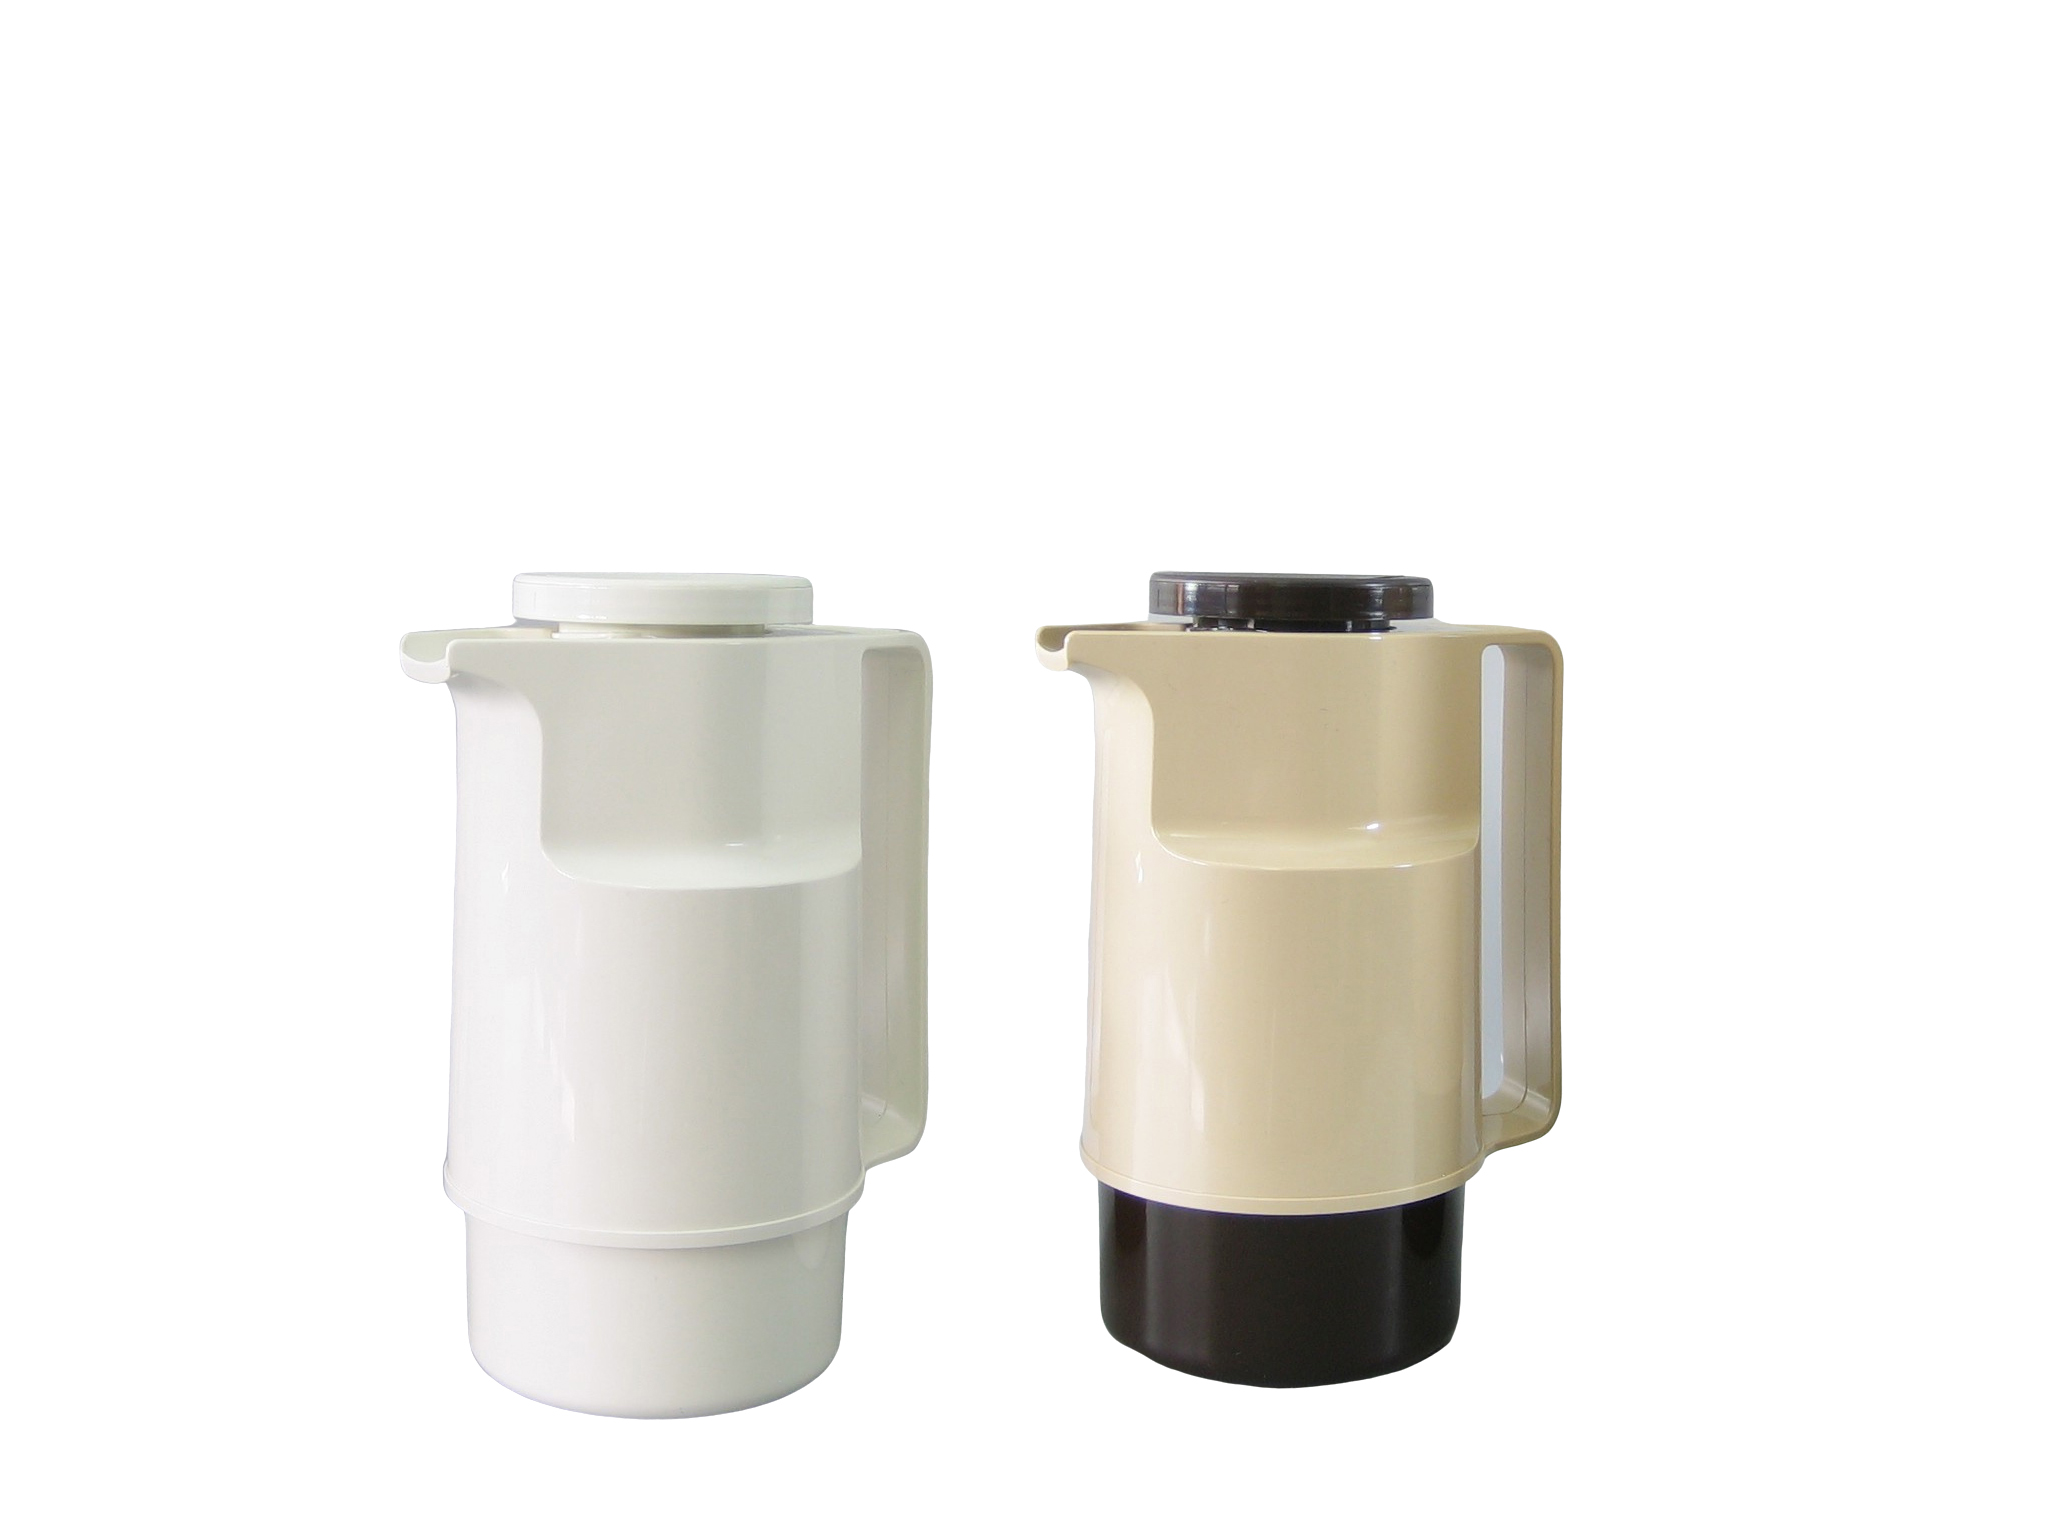 206-001 - Vacuum carafe ABS white 0.60 L - Isobel